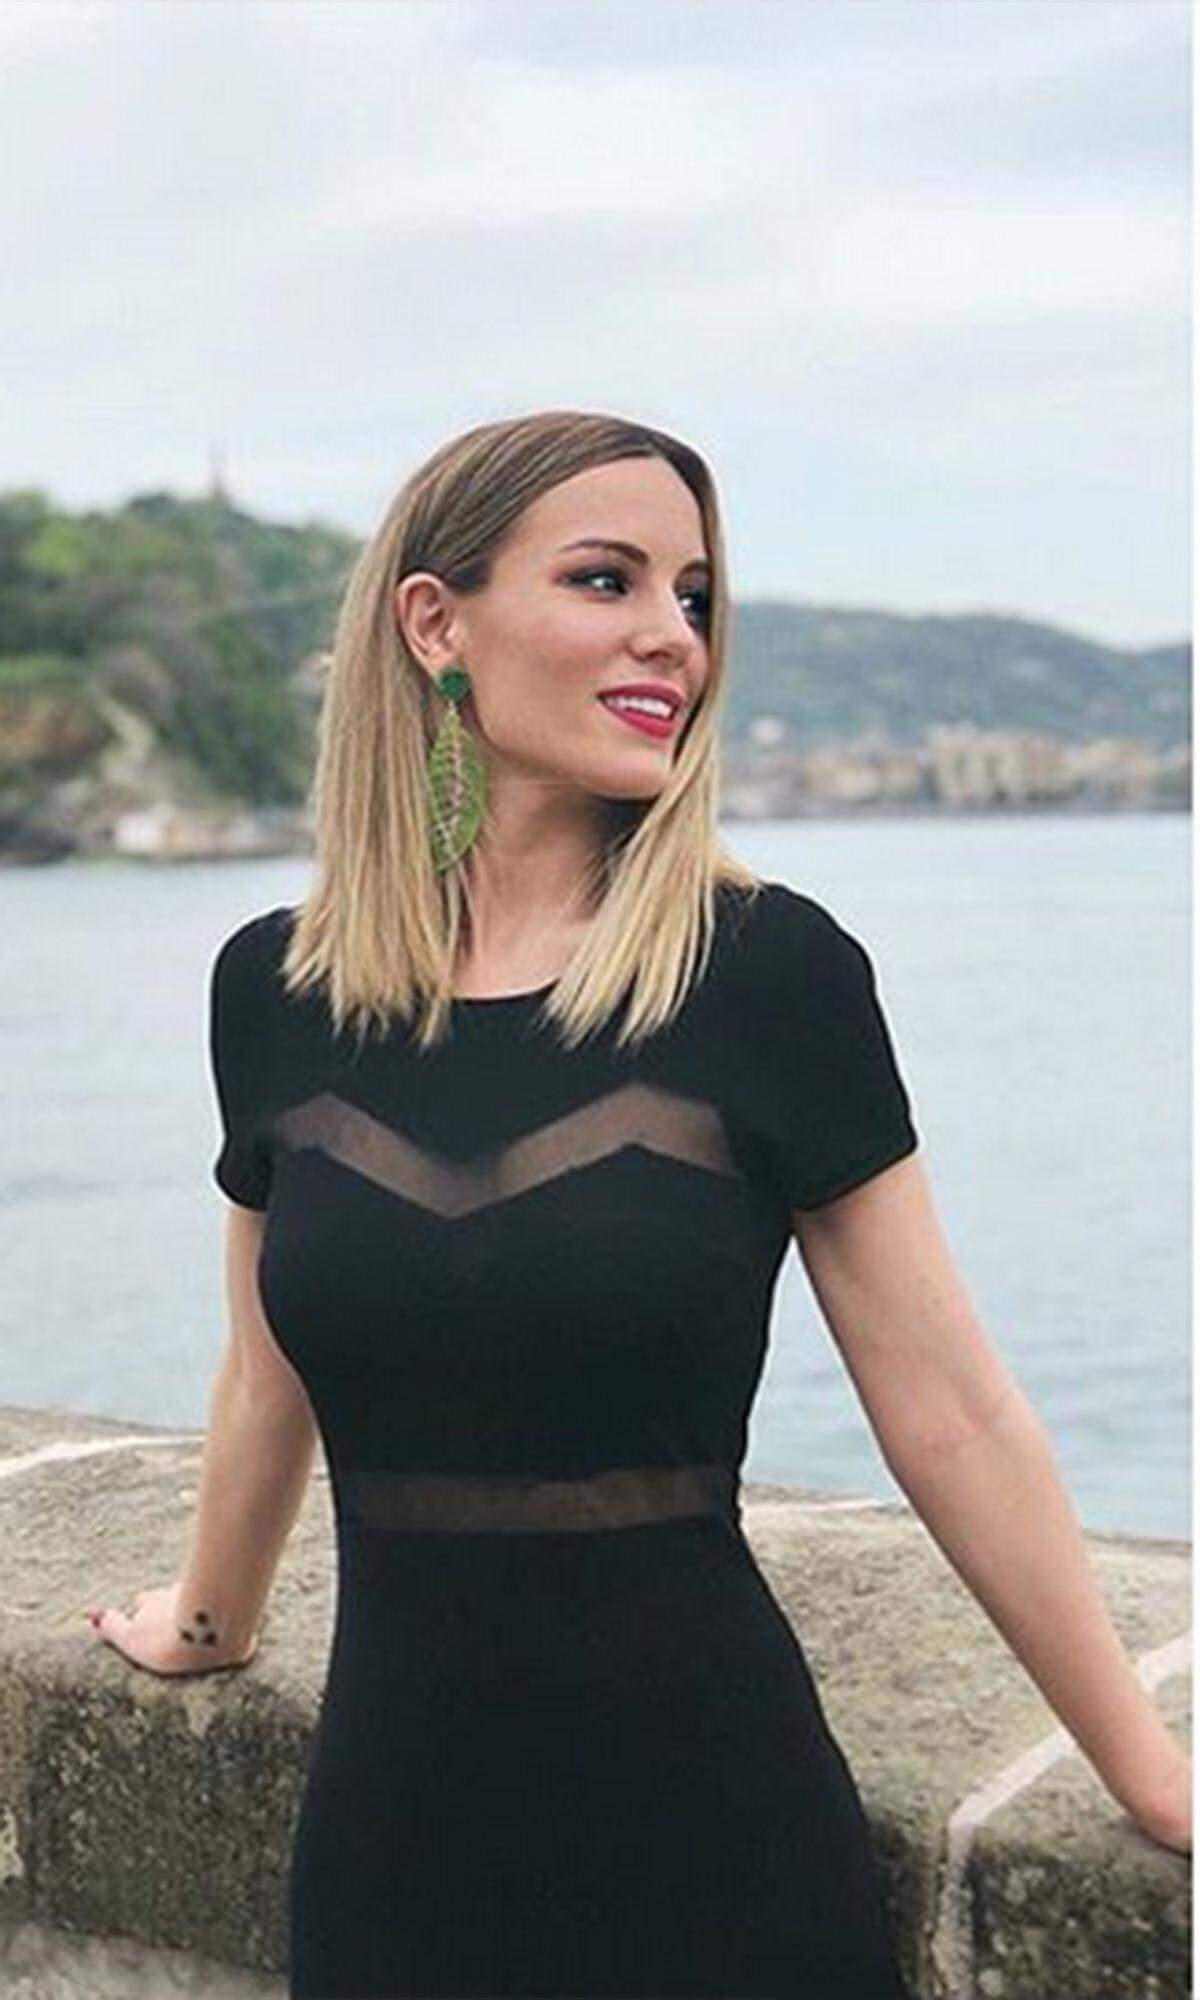 Edurne Garcia Almagro gilt als eine der schönsten Spielerfrauen der WM 2018. Sie ist die Freundin des spanischen Torwartes David de Gea und dürfte dem ein oder anderen schon bekannt sein: Als Sängerin vertrat sie Spanien 2015 beim Eurovision Song Contest.